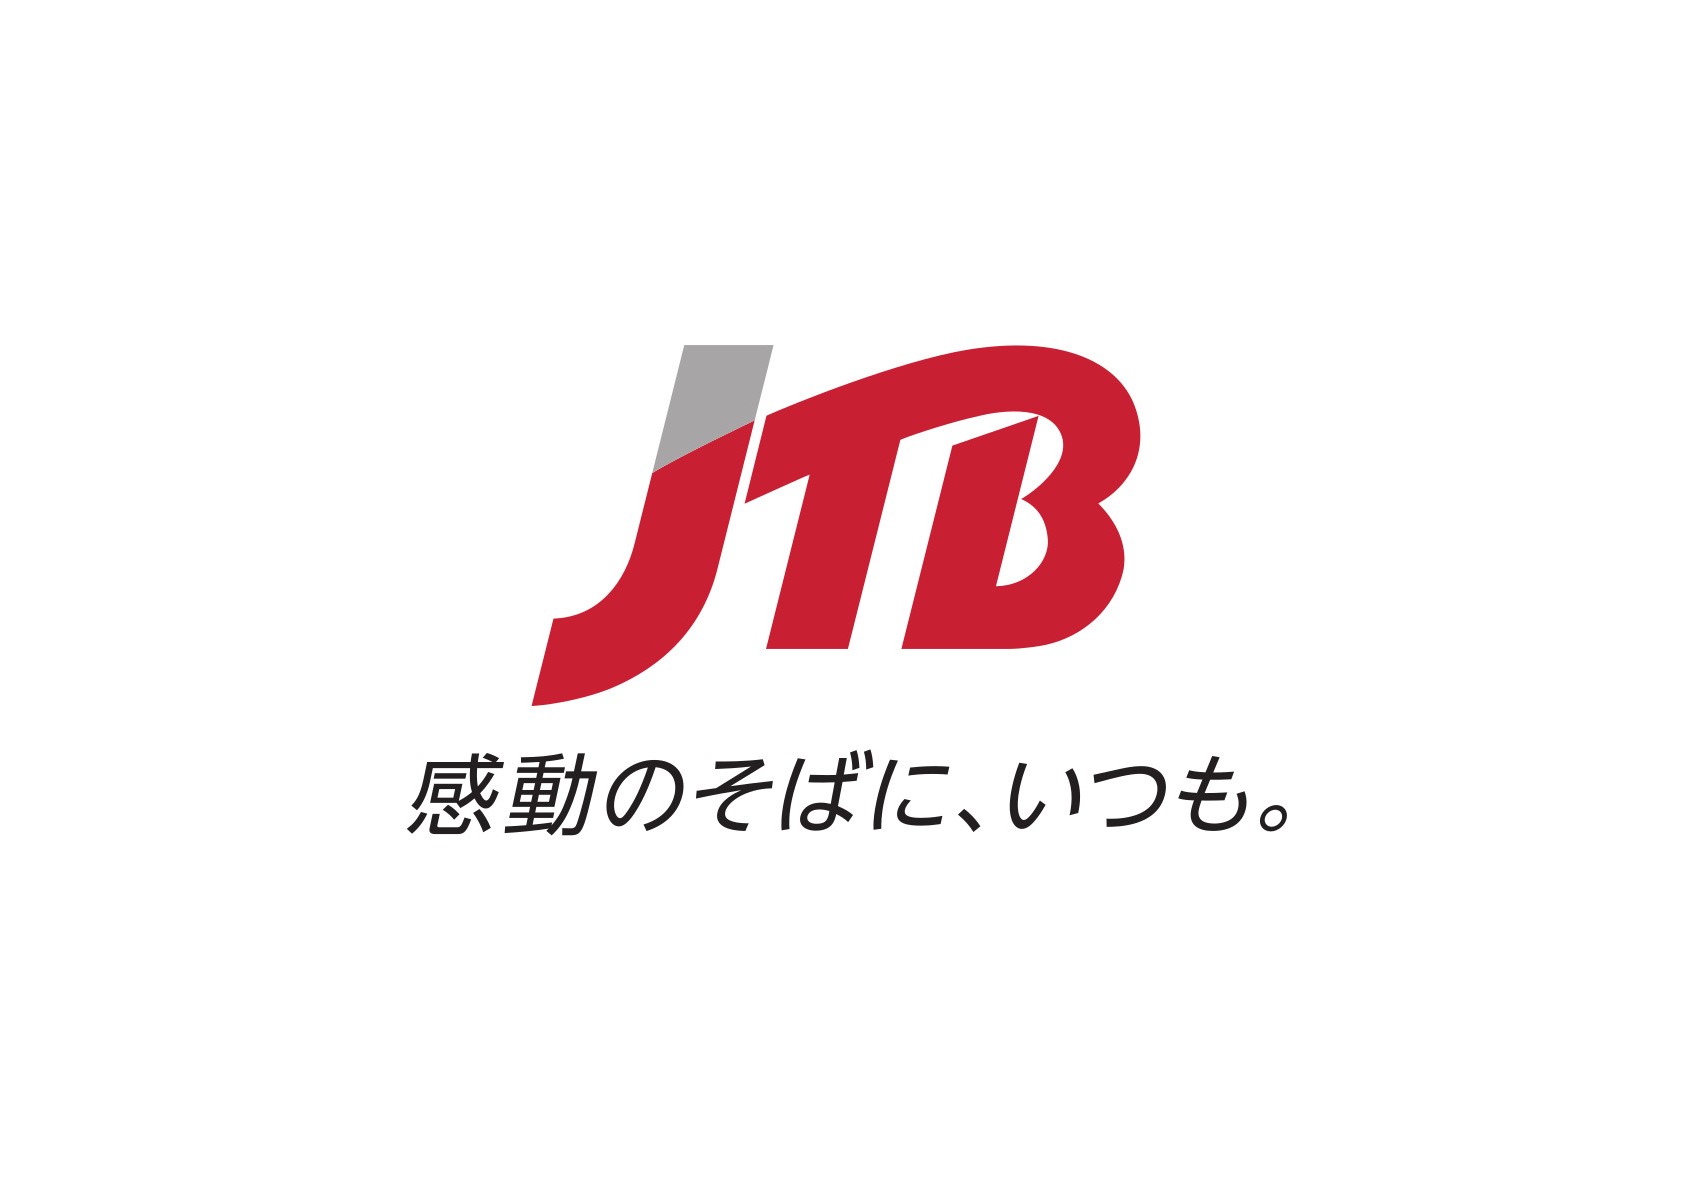 JTB OKINAWA Corp.